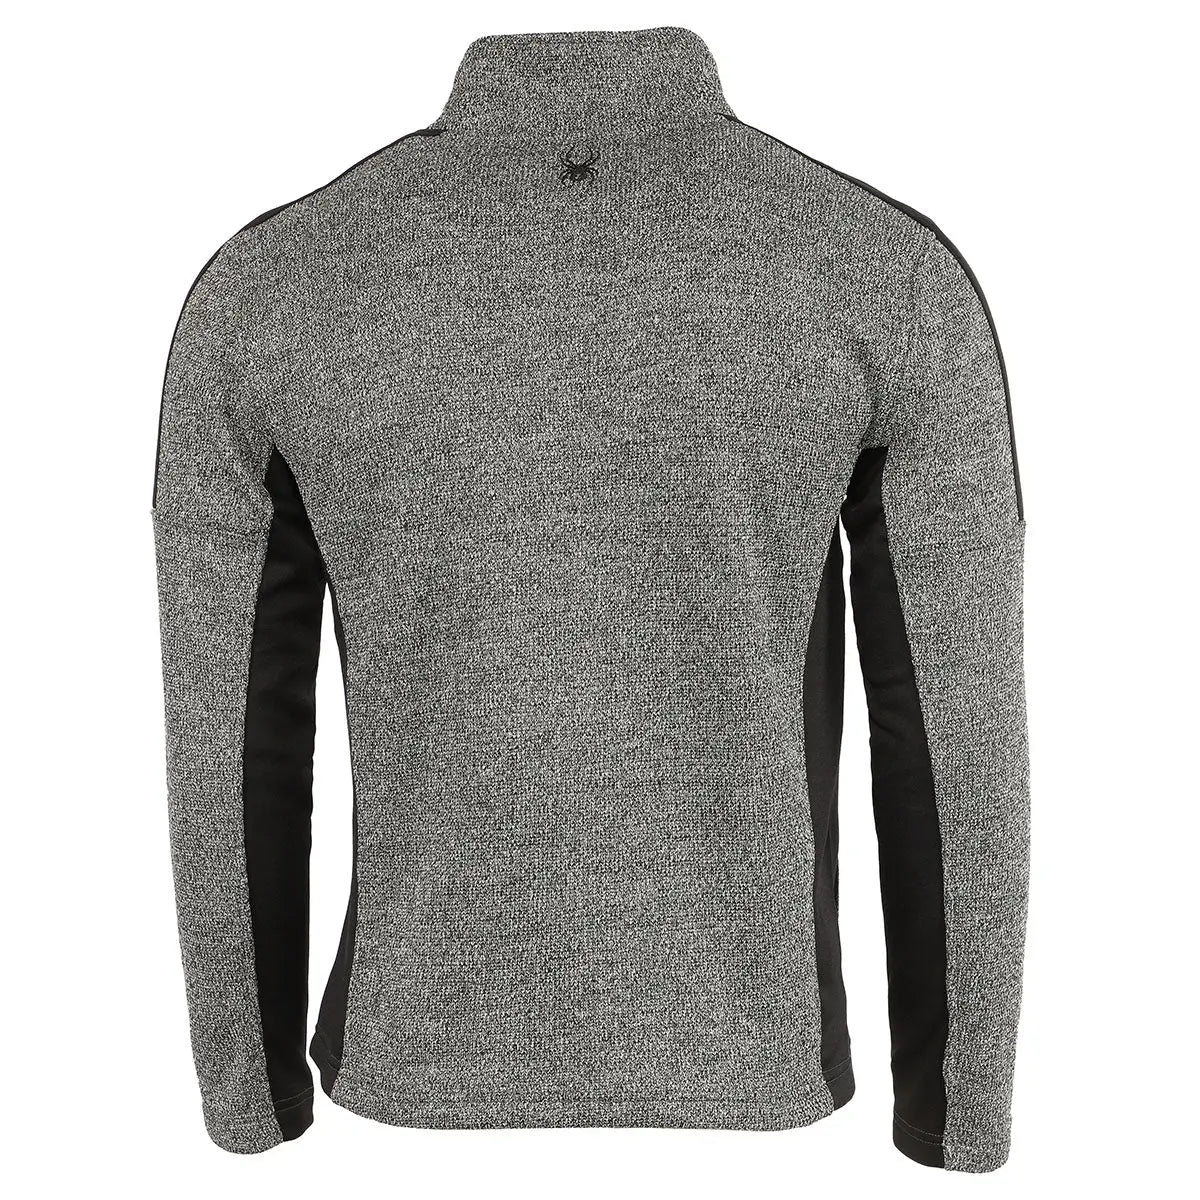 Spyder Mendoza Bonded Sweater Fleece Full-Zip Jacket